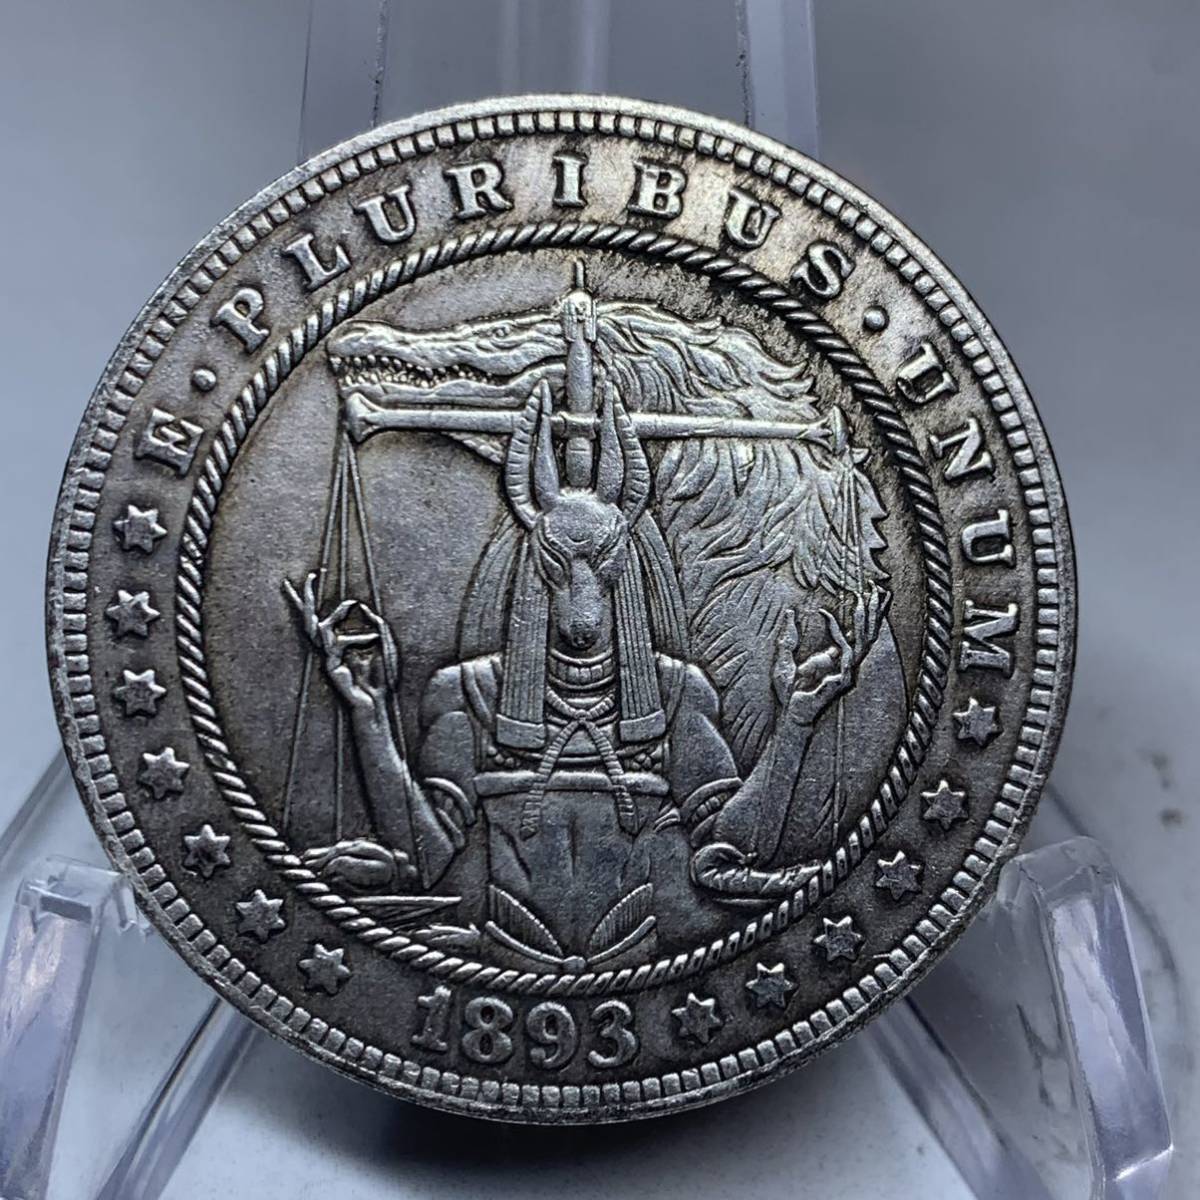 WX876流浪幣 エジプト 天秤狼 天眼 鷹紋 外国硬貨 貿易銀 海外古銭 コレクションコイン 貨幣 重さ約25g_画像1